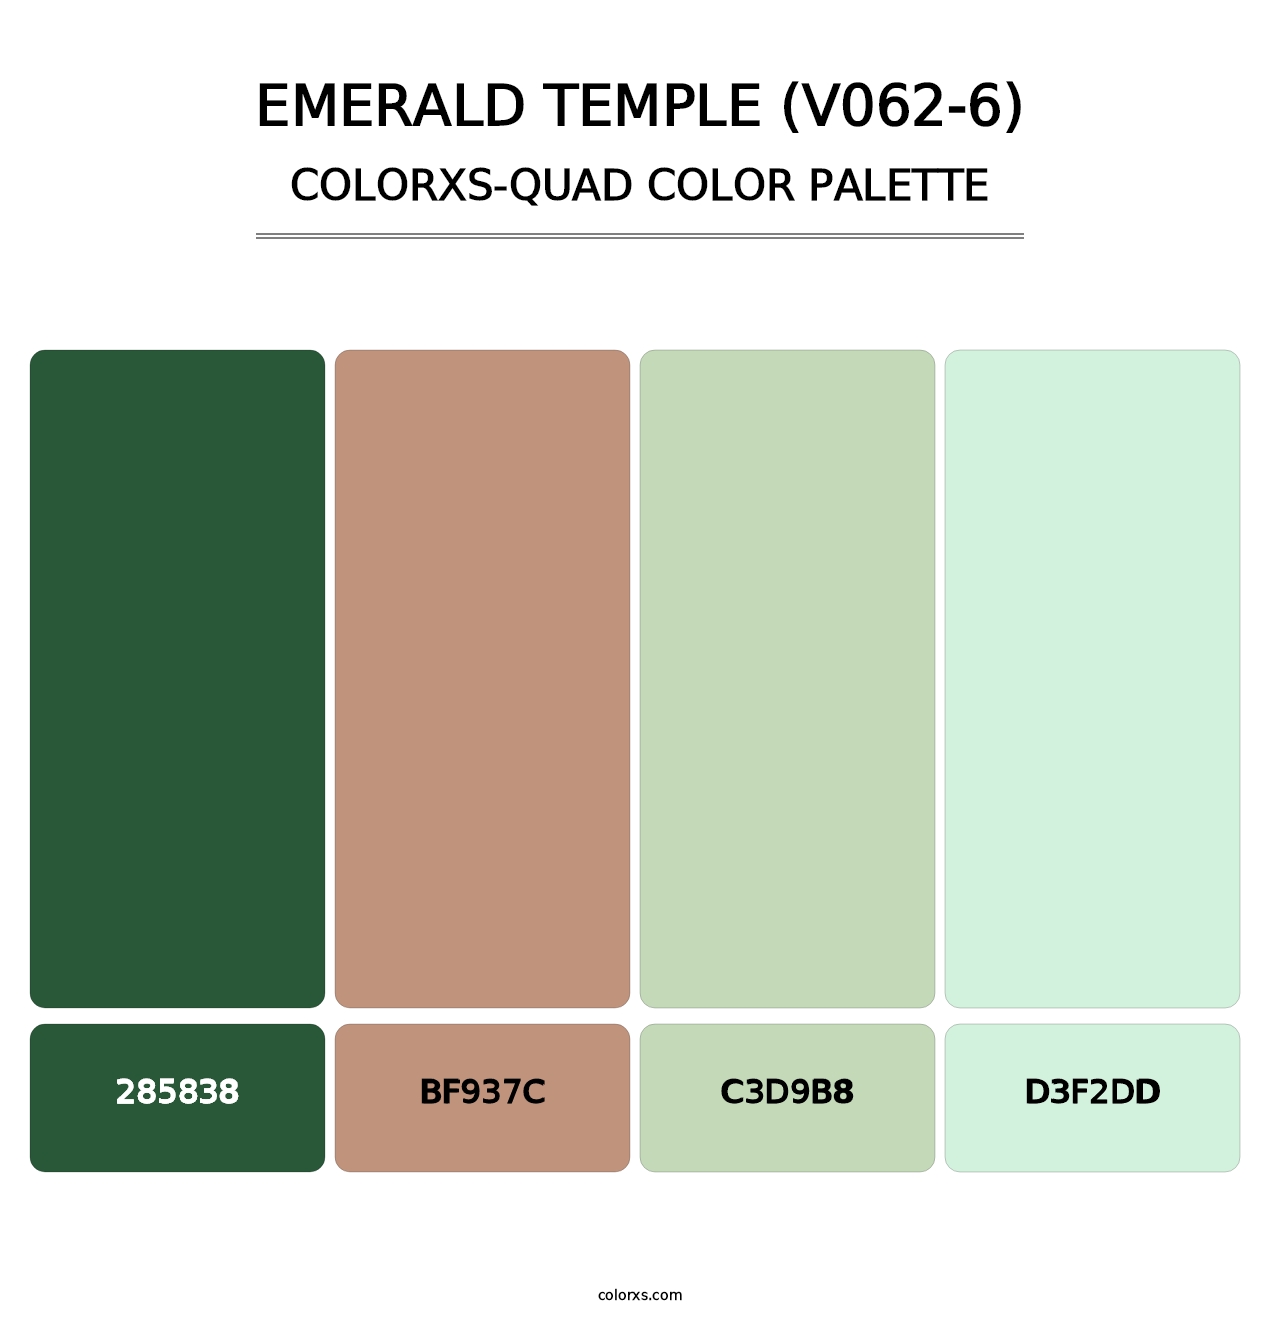 Emerald Temple (V062-6) - Colorxs Quad Palette